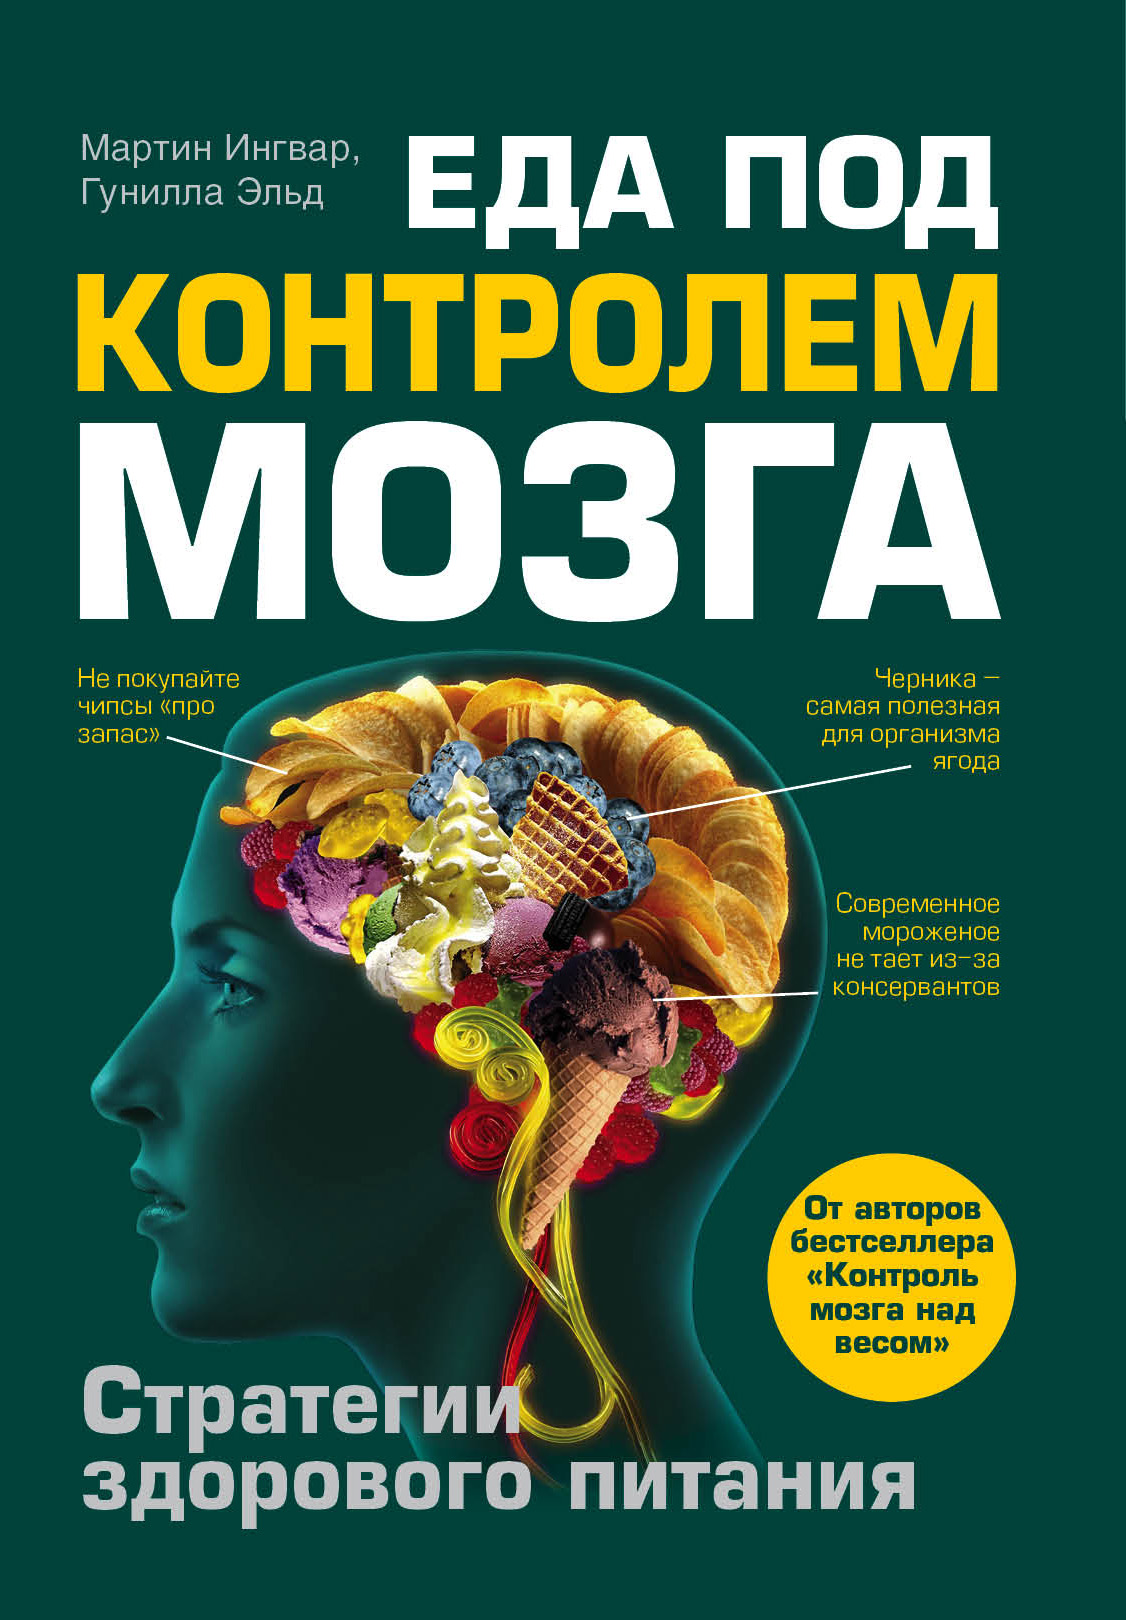 Читать книгу для мозгов. Книги про еду. Психология питания. Мозг с книжкой. Еда и мозг книга.